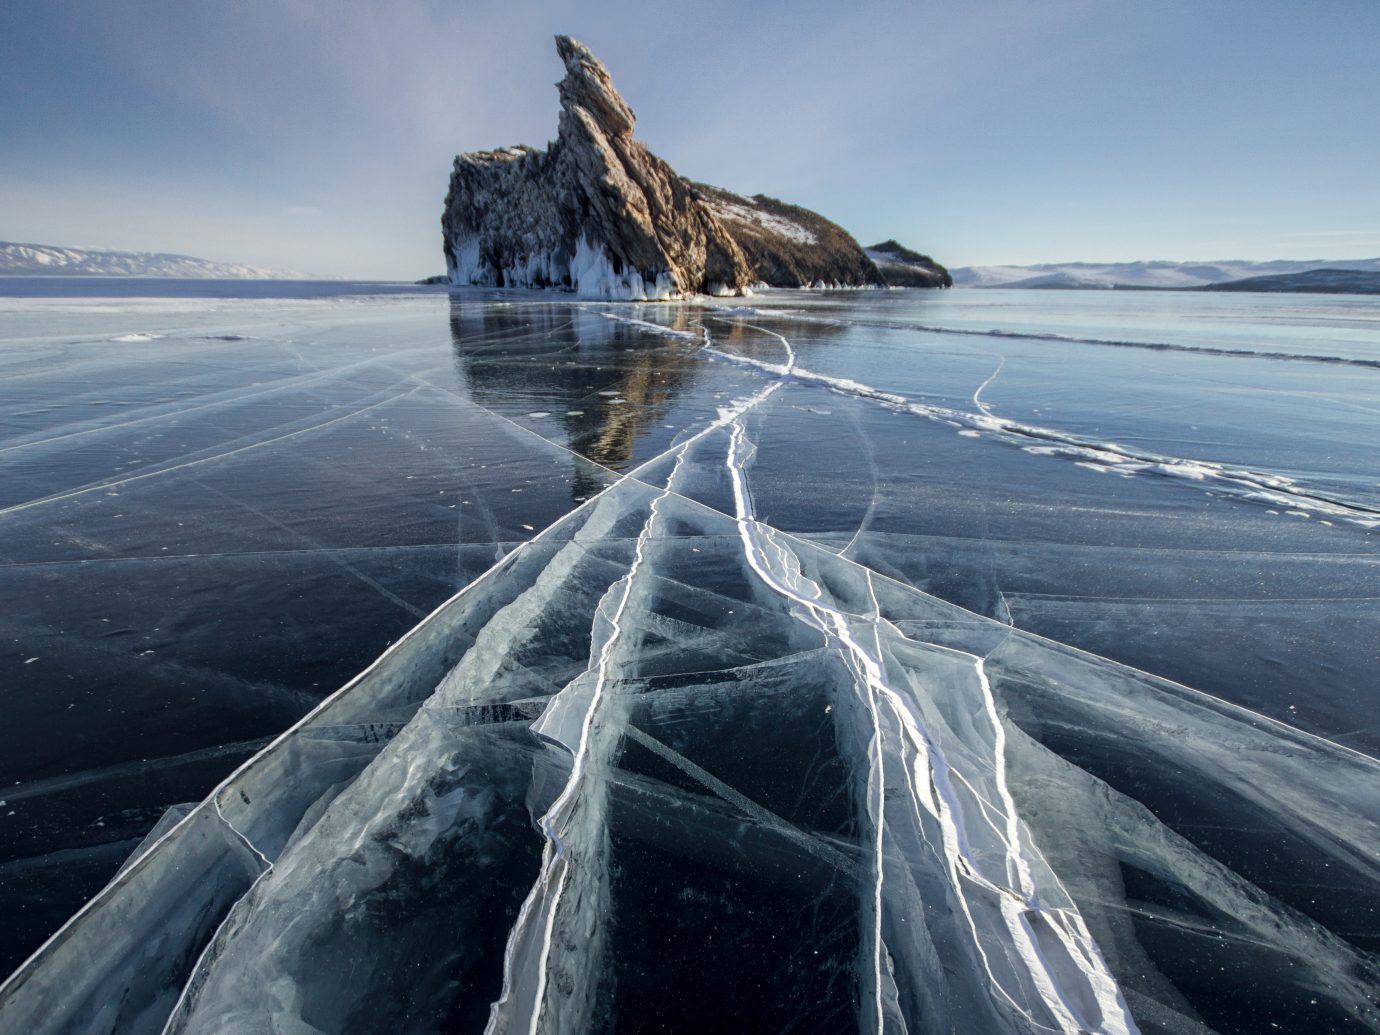 Lake Baikal on a frosty winter day.